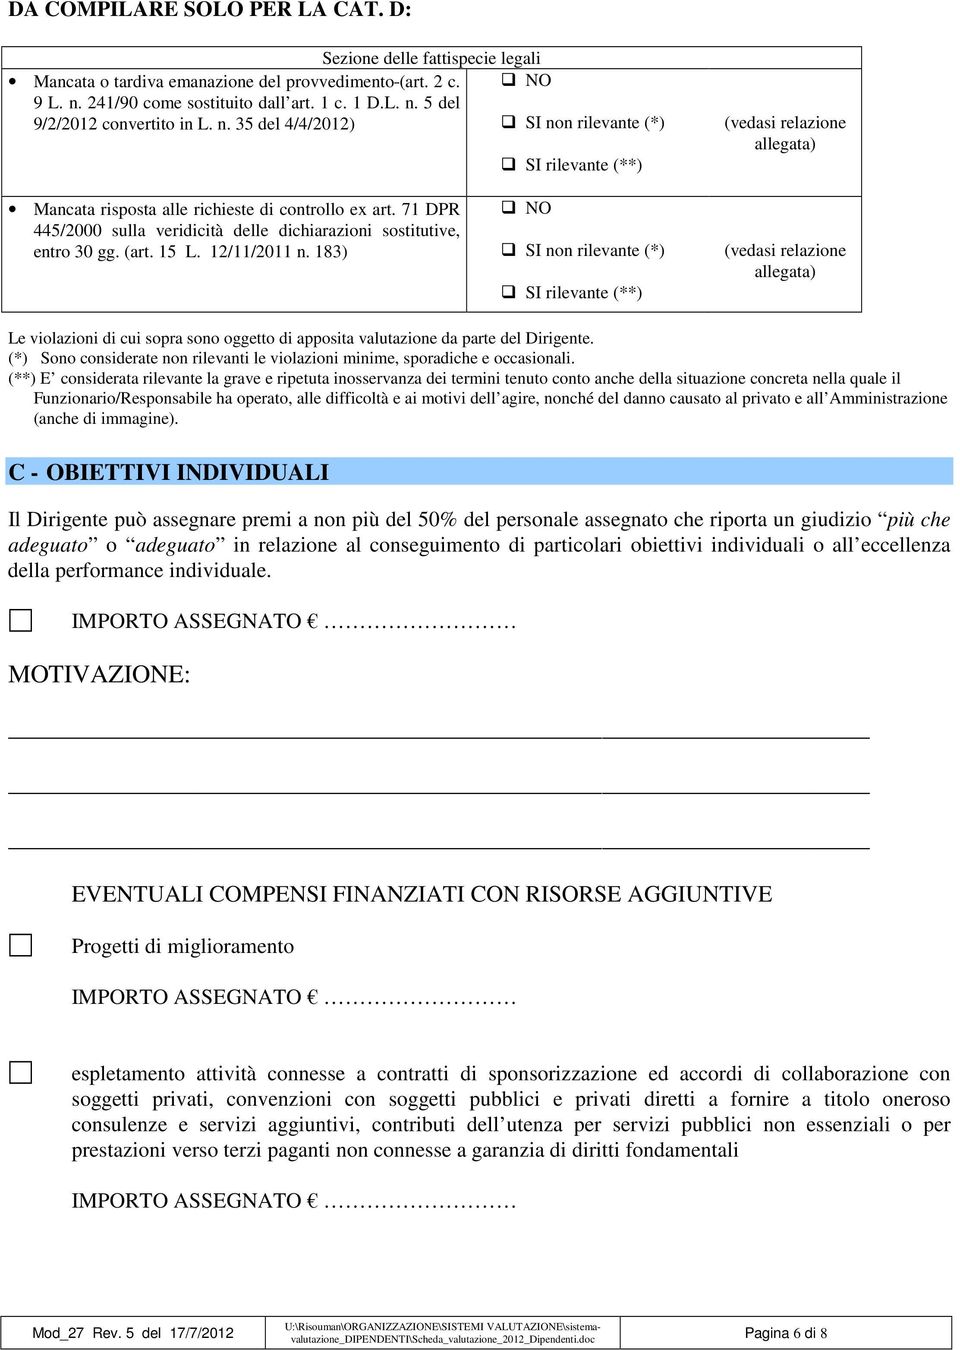 71 DPR 445/2000 sulla veridicità delle dichiarazioni sostitutive, entro 30 gg. (art. 15 L. 12/11/2011 n.